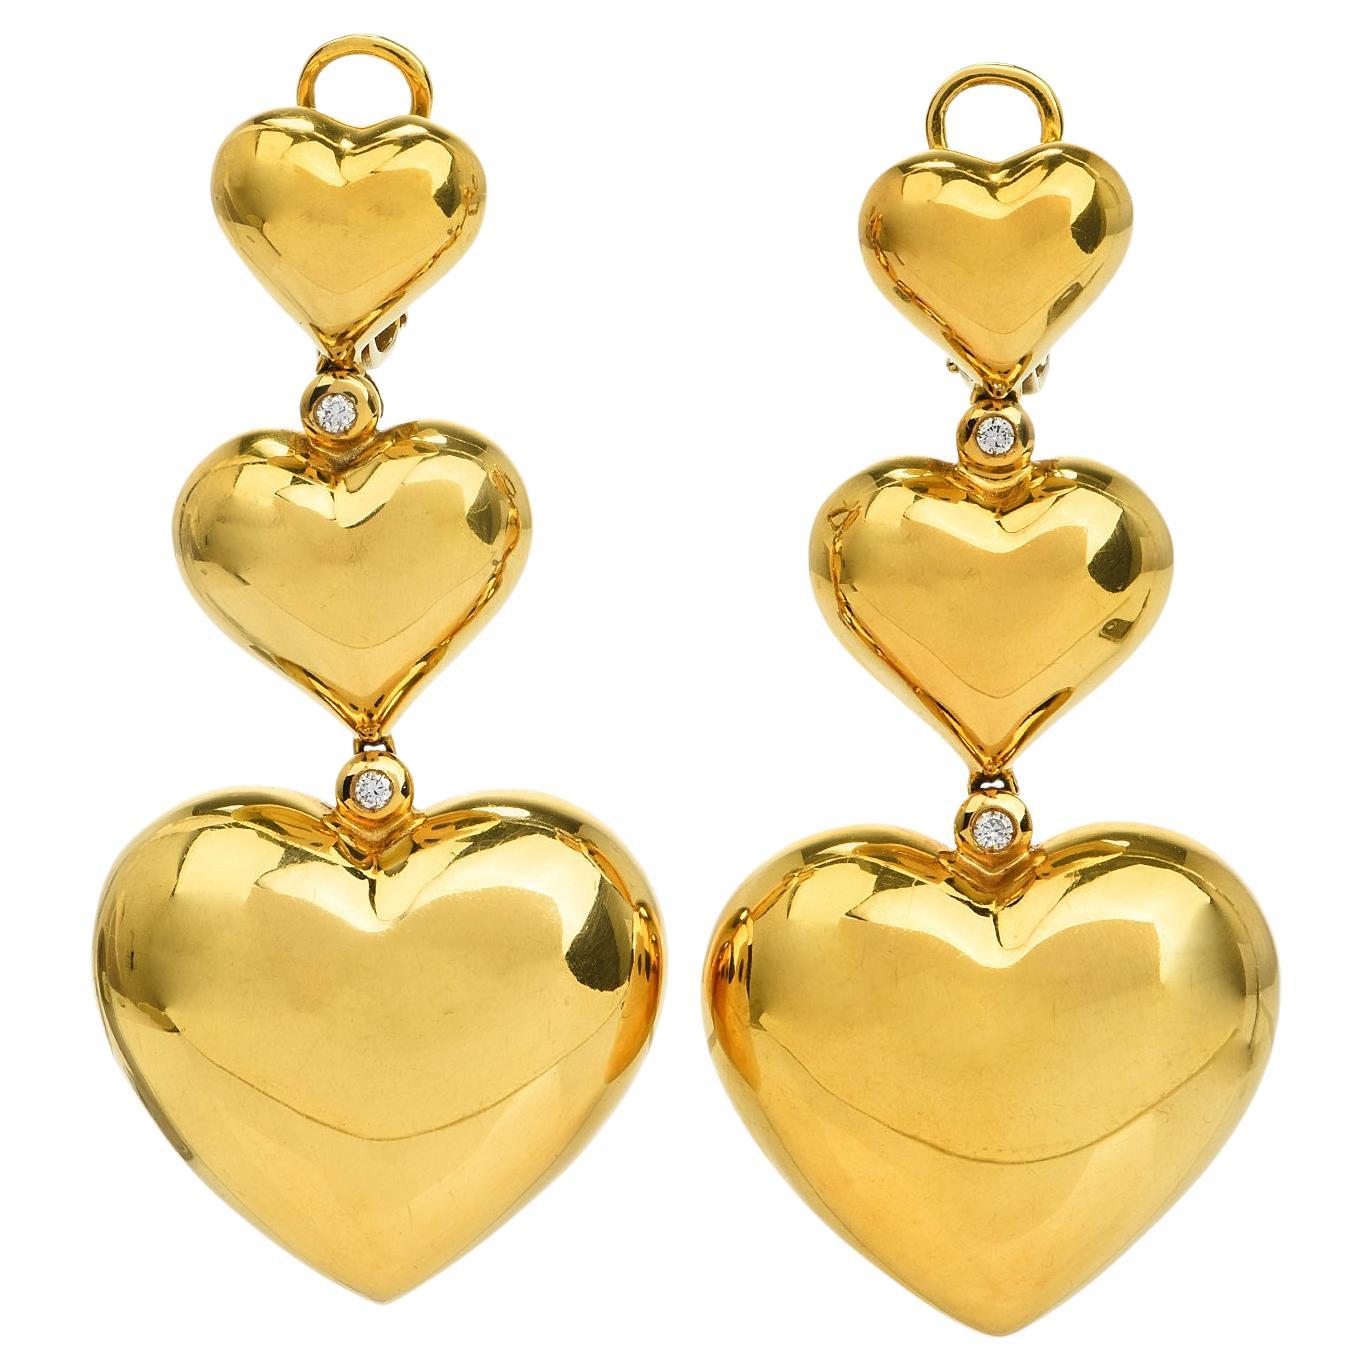 Large Heart Rhinestone Crystal Dangle Earrings Statement Drop Earrings  Brides Silver Love Heart Stud Earrings for Women Girls Heavy